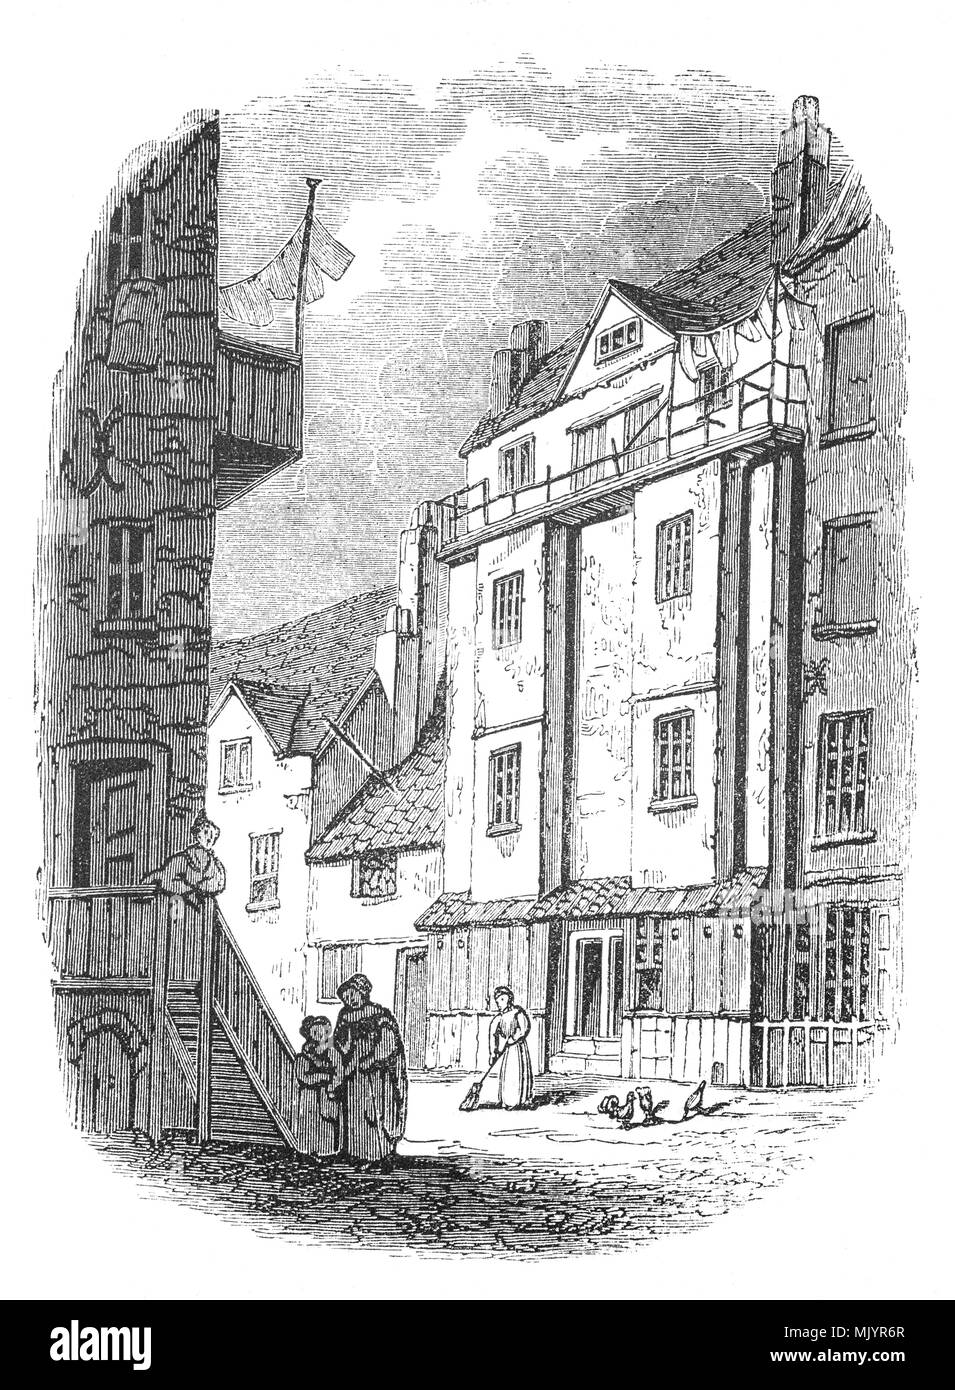 L'Almonry de l'abbaye de Westminster, où William Caxton (1412-1493) mis en place la première presse à imprimer en Angleterre en 1472, la maison a été démolie en 1845, de même que les autres bâtiments de l'Almonry. Caxton est né dans le Kent et l'école après avoir passé de nombreuses années à Bruges et en Hollande, pour une place éminente parmi ses collègues commerçants. Il s'est rendu à Cologne et adopté la nouvelle technique d'impression et d'acquisition d'une presse afin de publier ses traductions de divers livres en français. Ce qui porte son Appuyez sur pour l'Angleterre il a loué des locaux à l'enseigne de la pale rouge dans la région de Westminster. Banque D'Images